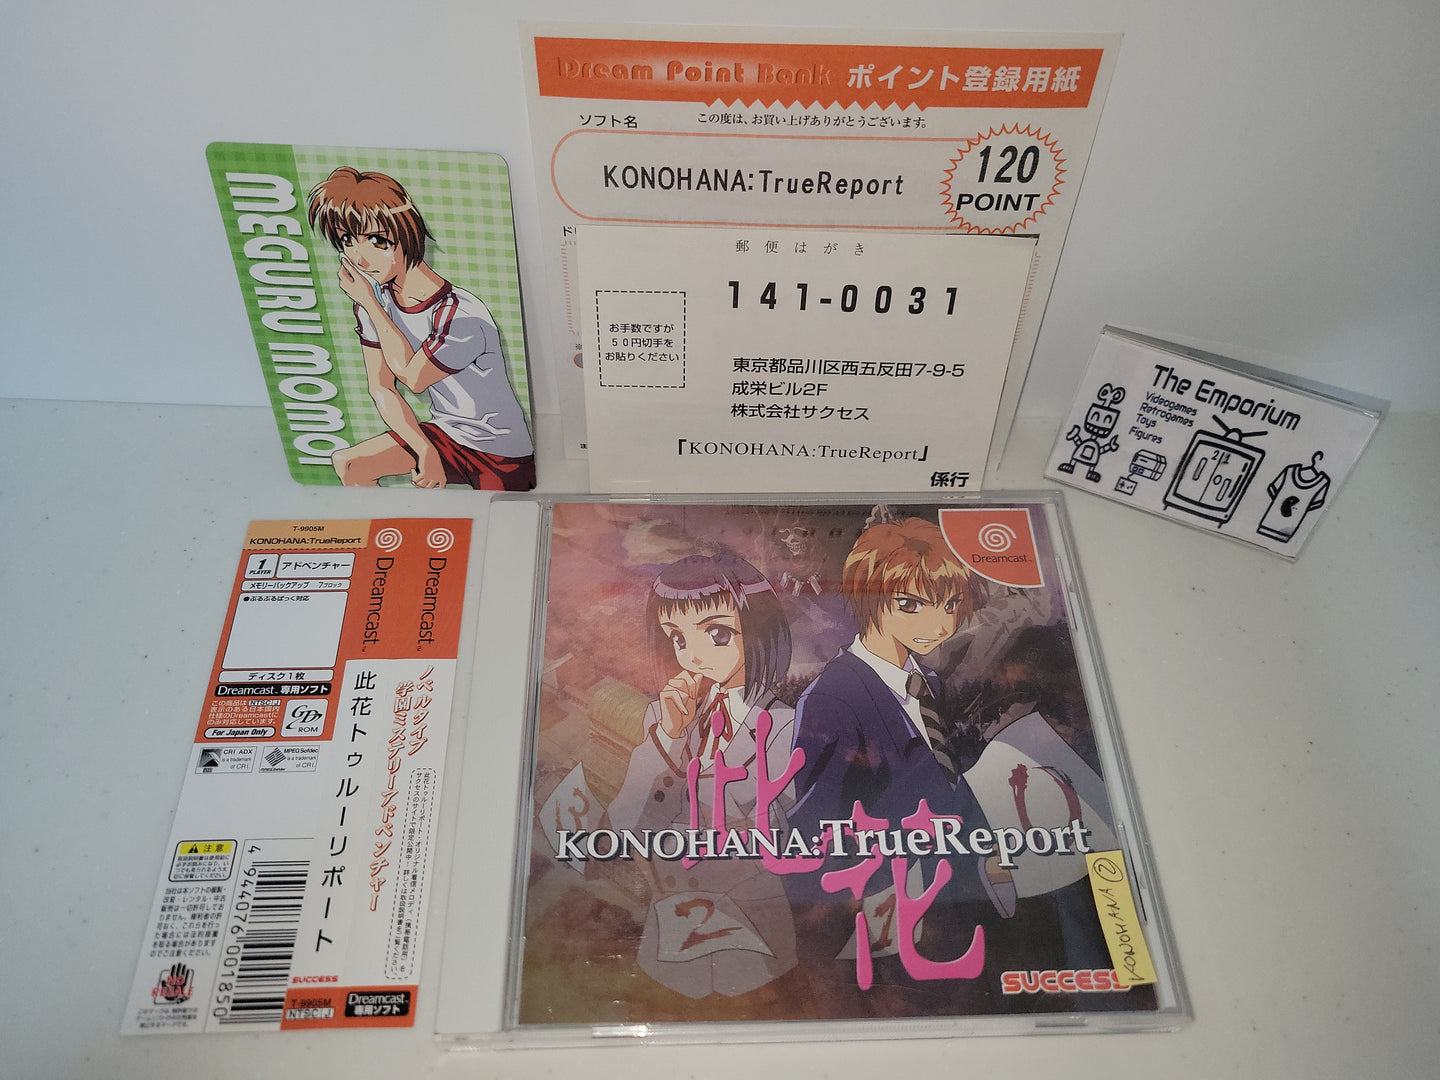 Konohana: True Report - Sega dc Dreamcast